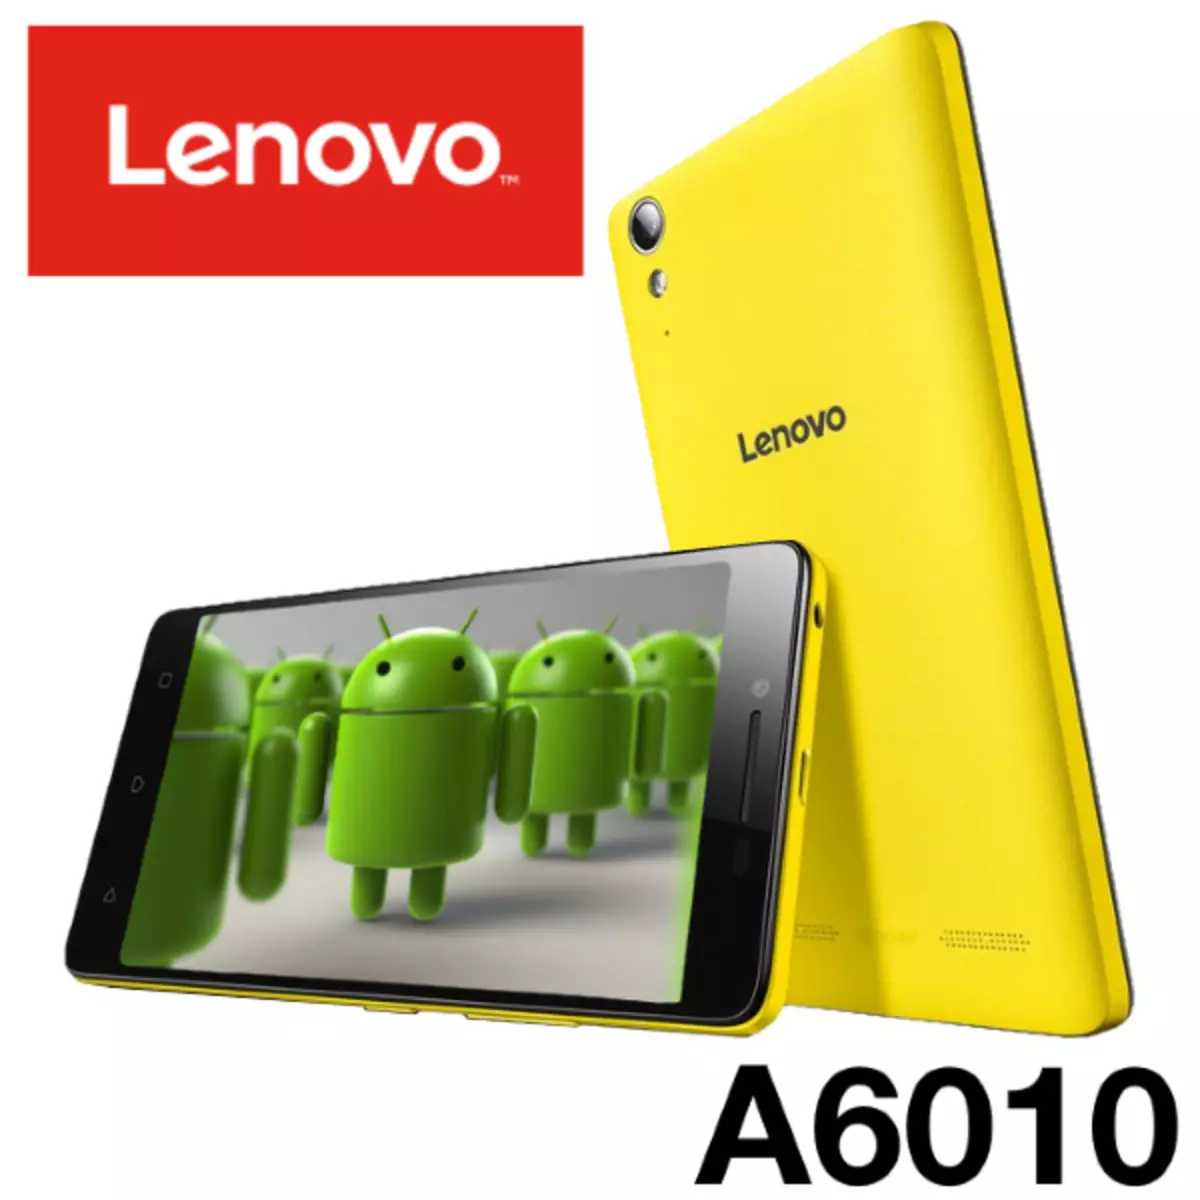 Firmware Lenovo A6010.